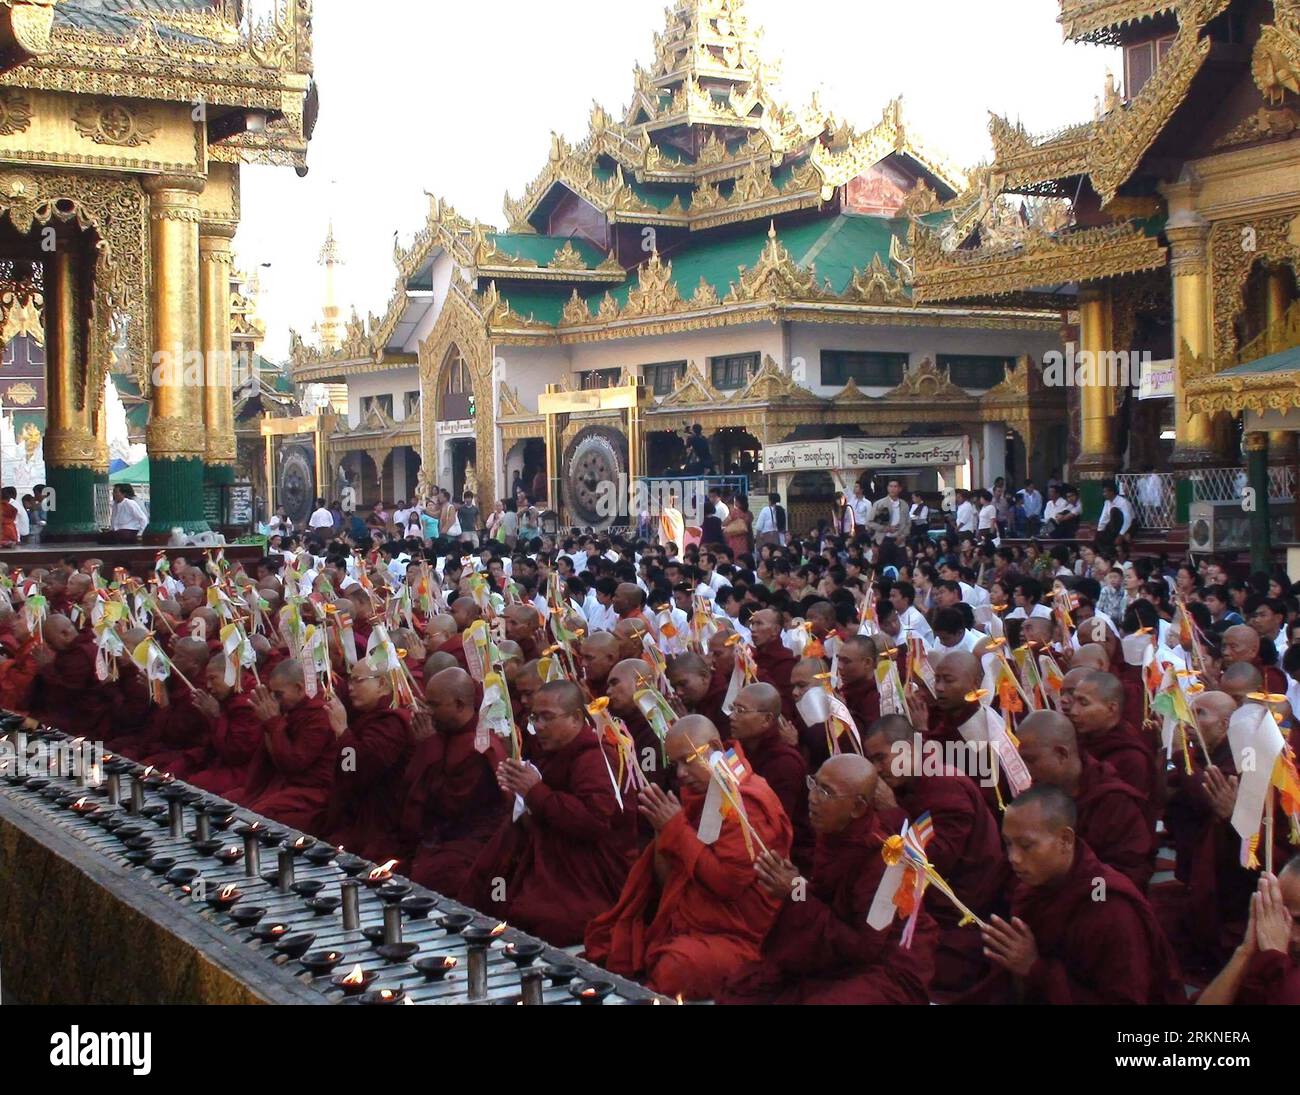 Bildnummer : 57107052 Datum : 25.02.2012 Copyright : imago/Xinhua (120225) -- YANGON, 25 février 2012 (Xinhua) -- Un total de 2 600 moines vénérables récitent un sutra à la pagode Shwedagon pour marquer le 2600e anniversaire de la célèbre pagode Shwedagon à Yangon, Myanmar, le 25 février 2012. (Xinhua/U Aung) (dtf) MYANMAR-YANGON-SHWEDAGON PAGODE-2,600TH ANNIVERSAIRE-CÉLÉBRATION PUBLICATIONxNOTxINxCHN Gesellschaft religion Buddhismus Pagode Jubiläum Jahrestag 2600 Tempel Mönch xns x0x 2012 quer 57107052 Date 25 02 2012 Copyright Imago XINHUA Yangon février 25 2012 XINHUA un total de 2 600 moines Reci Banque D'Images